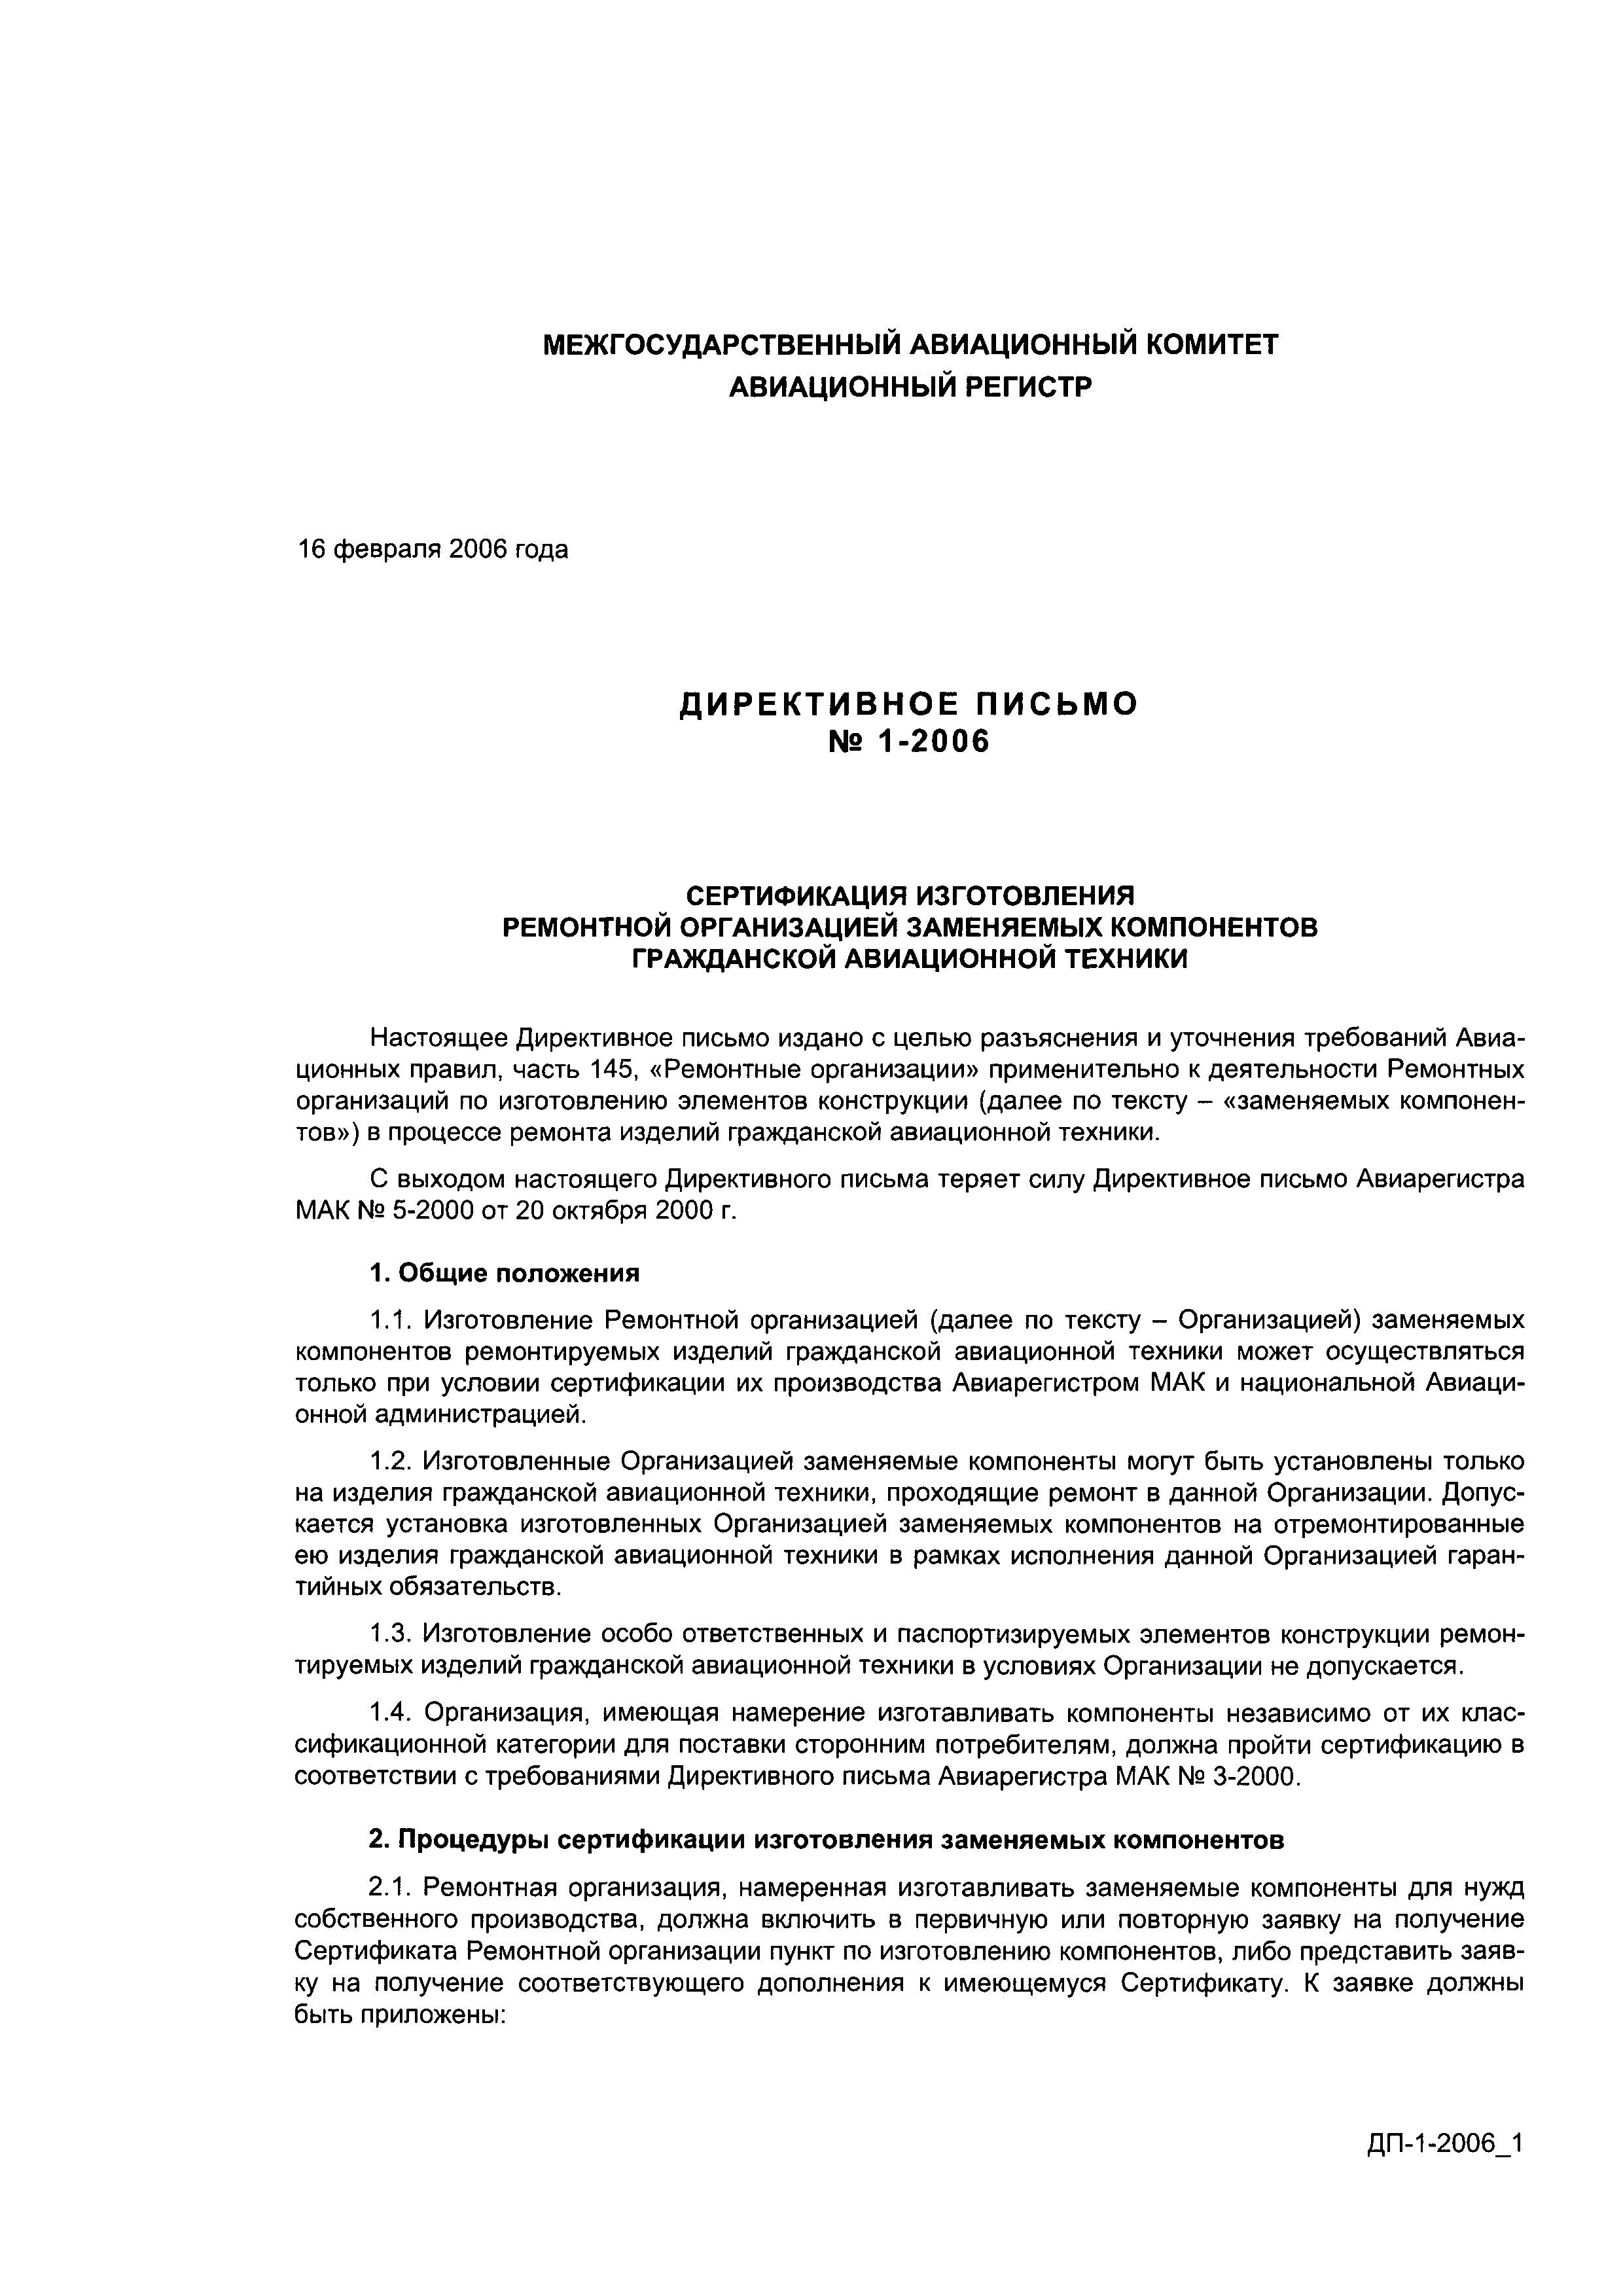 Директивное письмо 1-2006